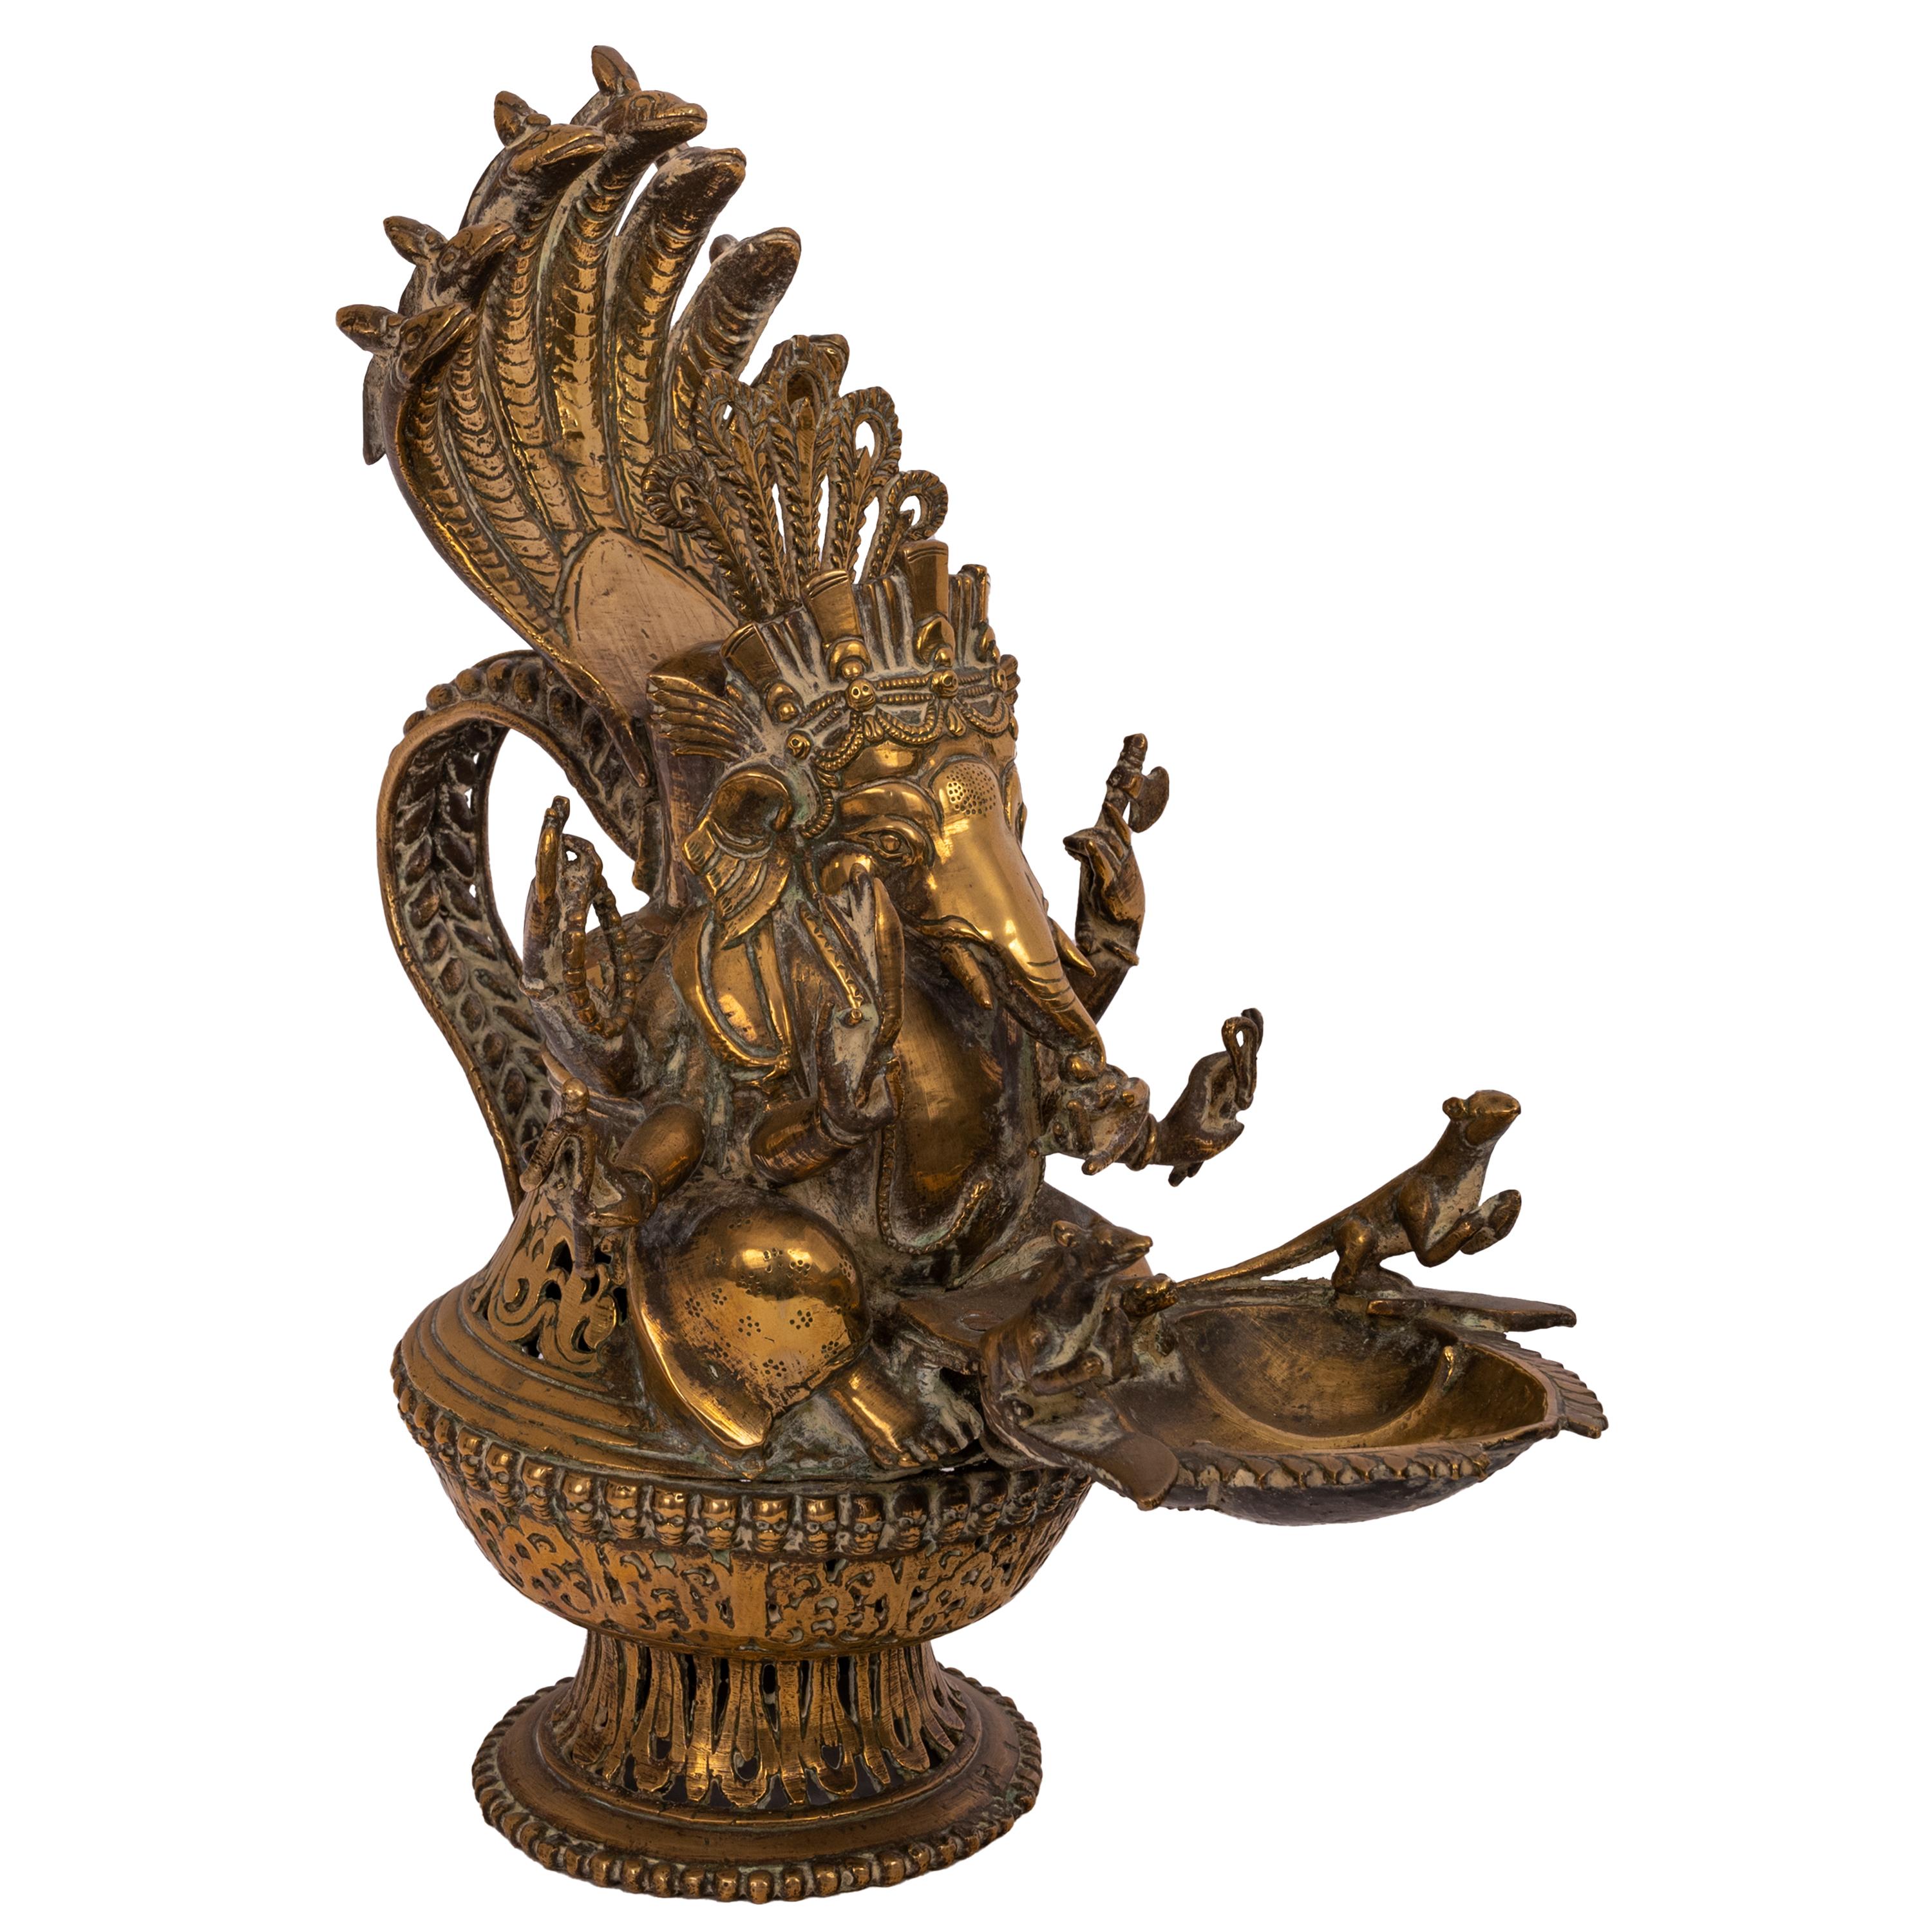 Grande lampe à huile votive indienne en laiton, datant du début du XIXe siècle, représentant la divinité hindoue Lord Ganesha, vers 1800.
Une figure en laiton finement moulée de Lord Ganesha avec une couronne de serpents et quatre bras, la tête de